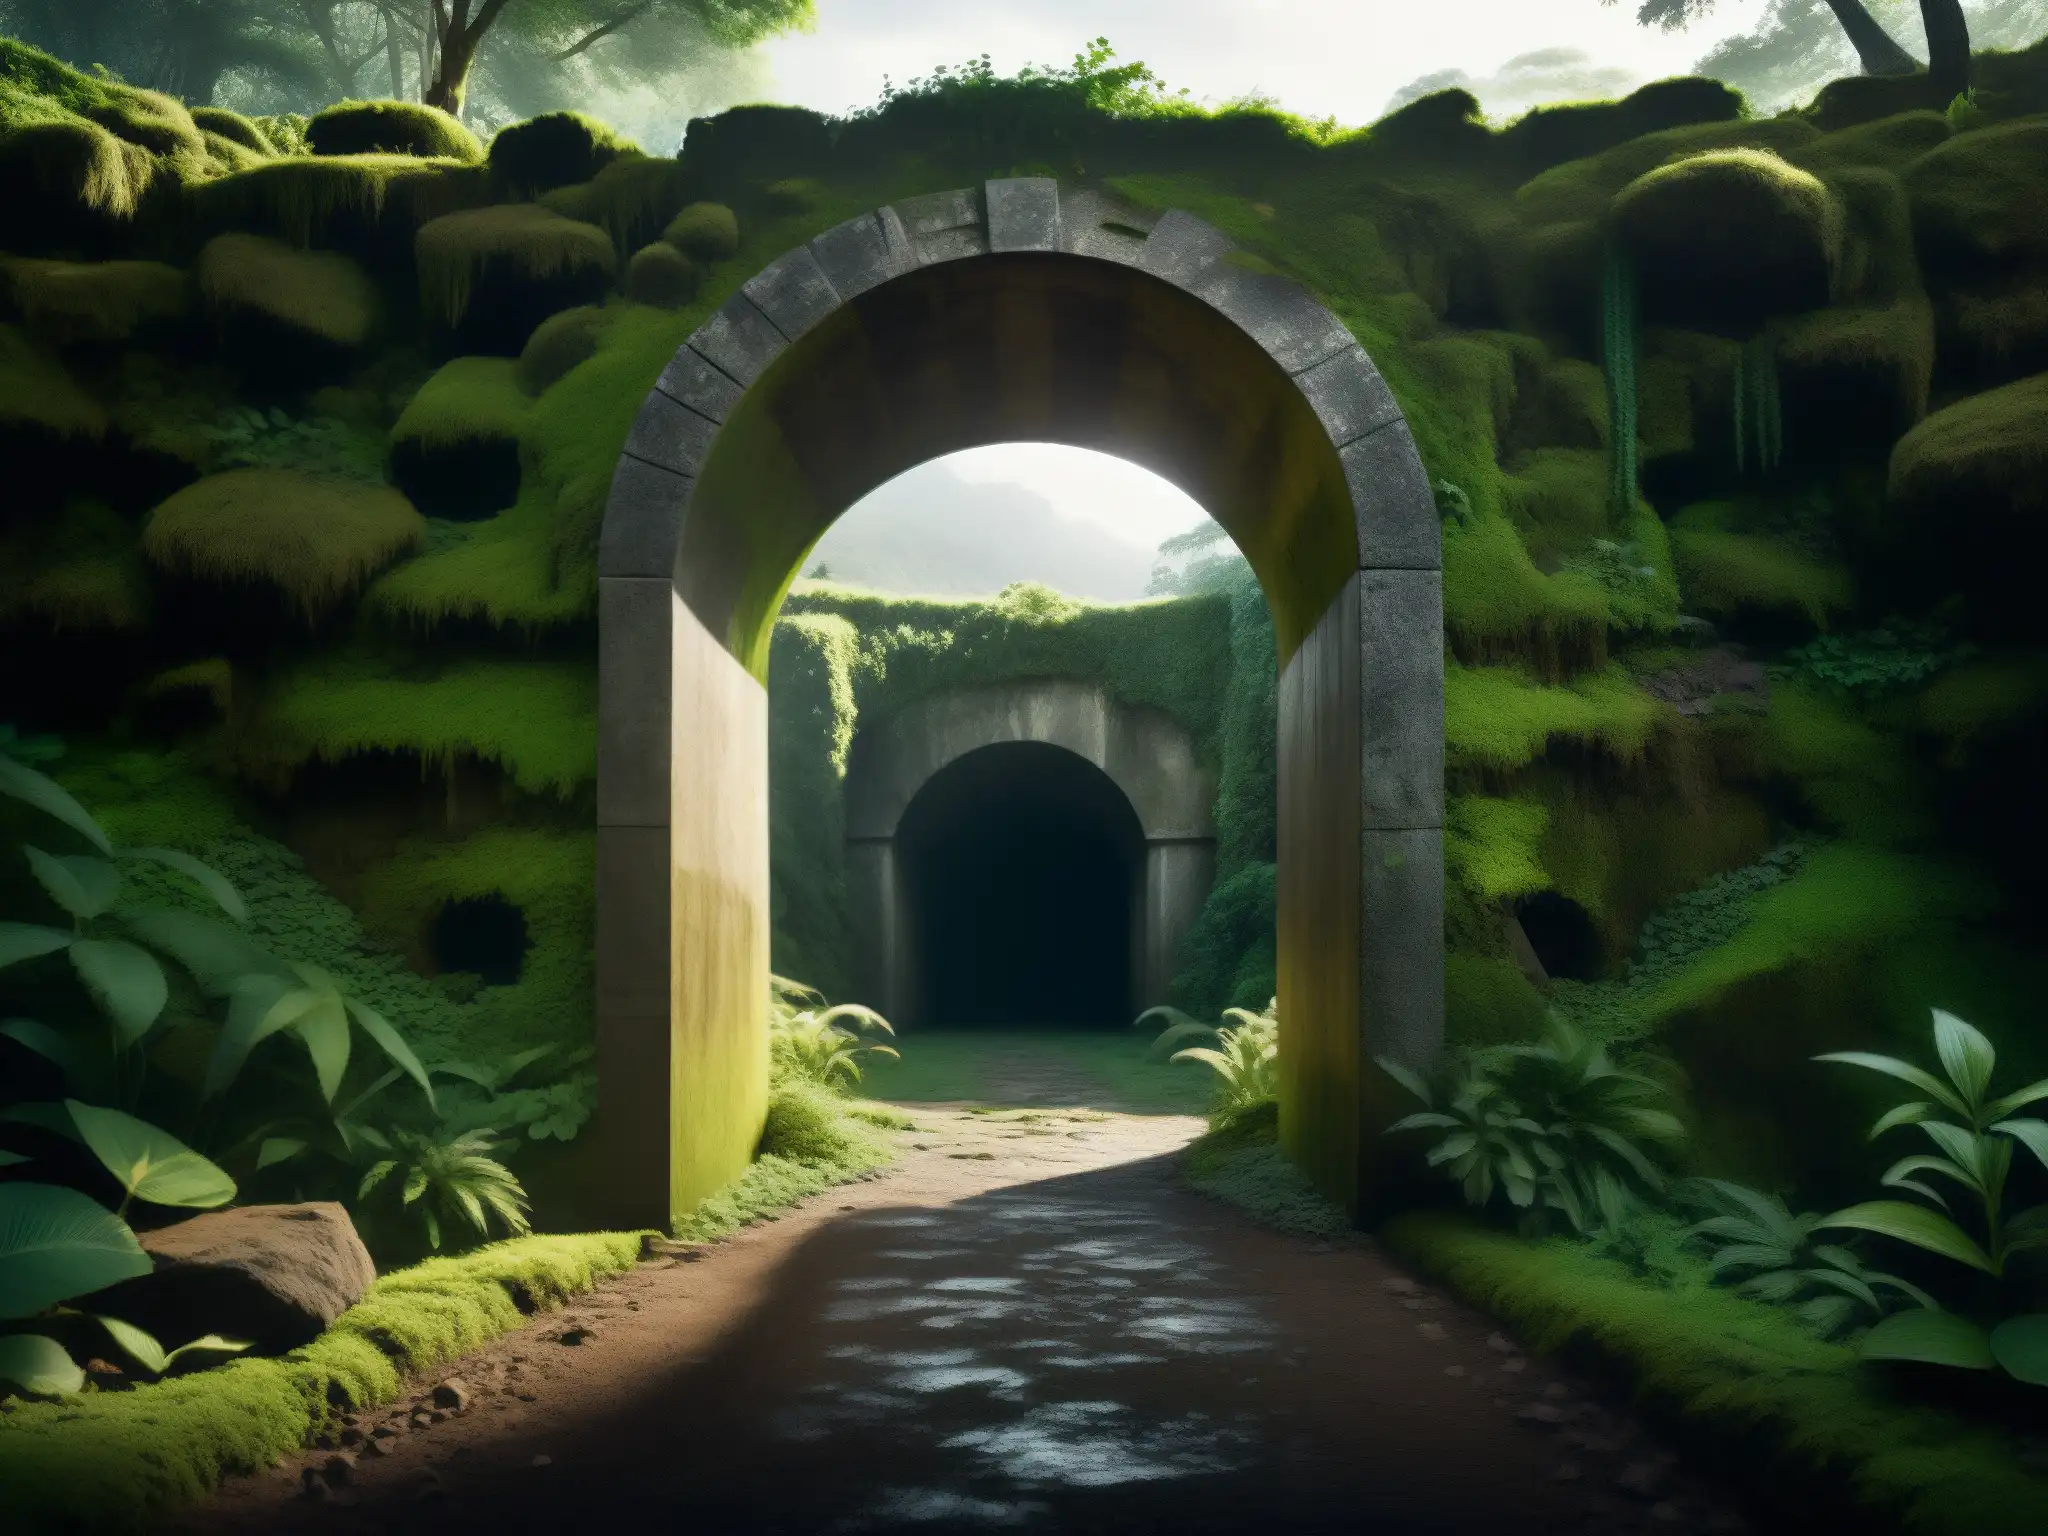 Entrada al misterioso Tunel de la Llorona en Celaya, cubierto de musgo y rodeado de vegetación densa, evocando intriga y misterio